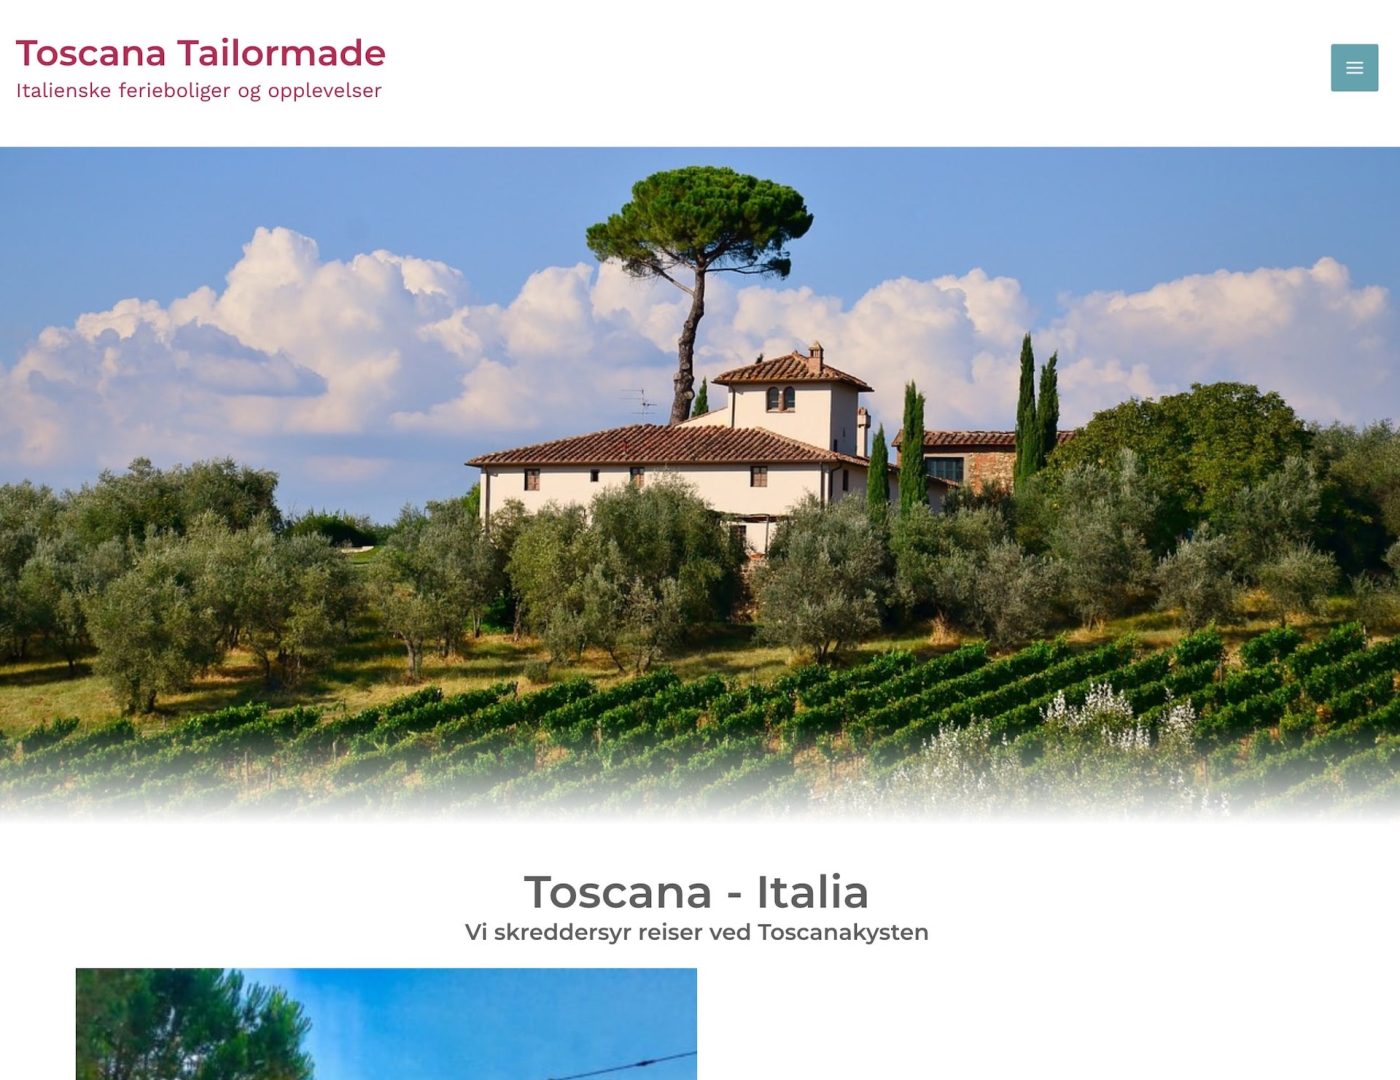 Toscanatailormade.com forside